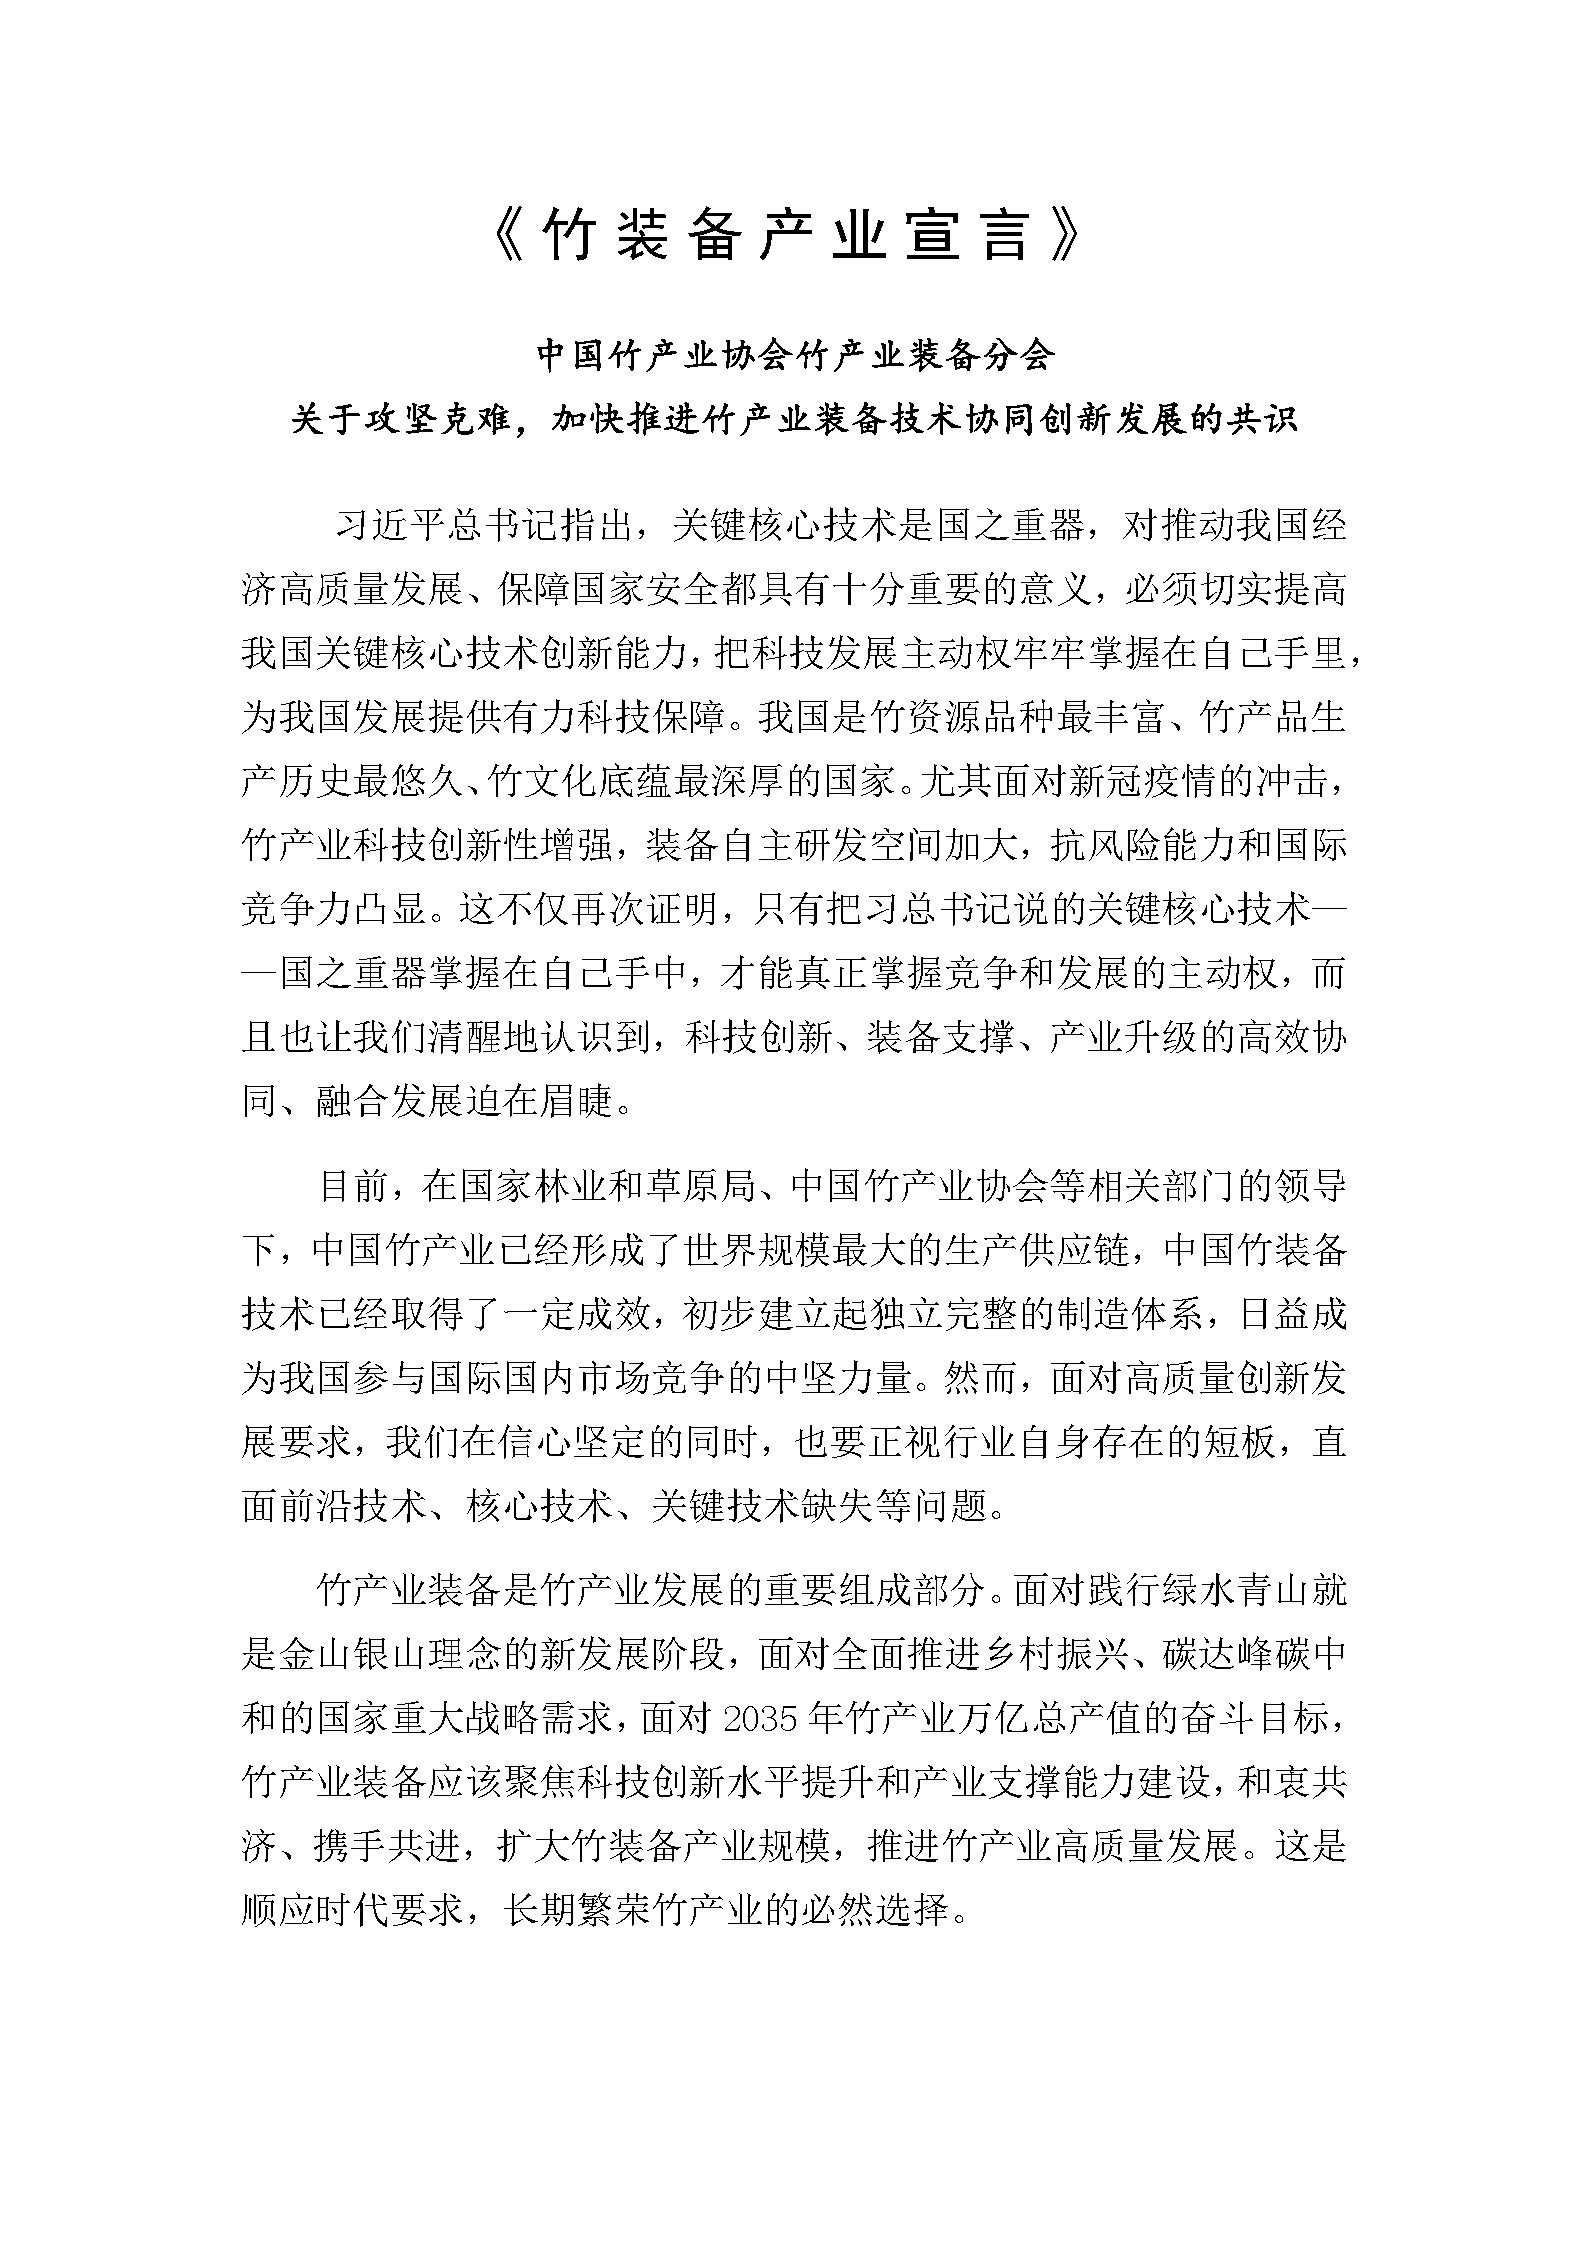 竹装备产业宣言-终稿_Page1.jpg